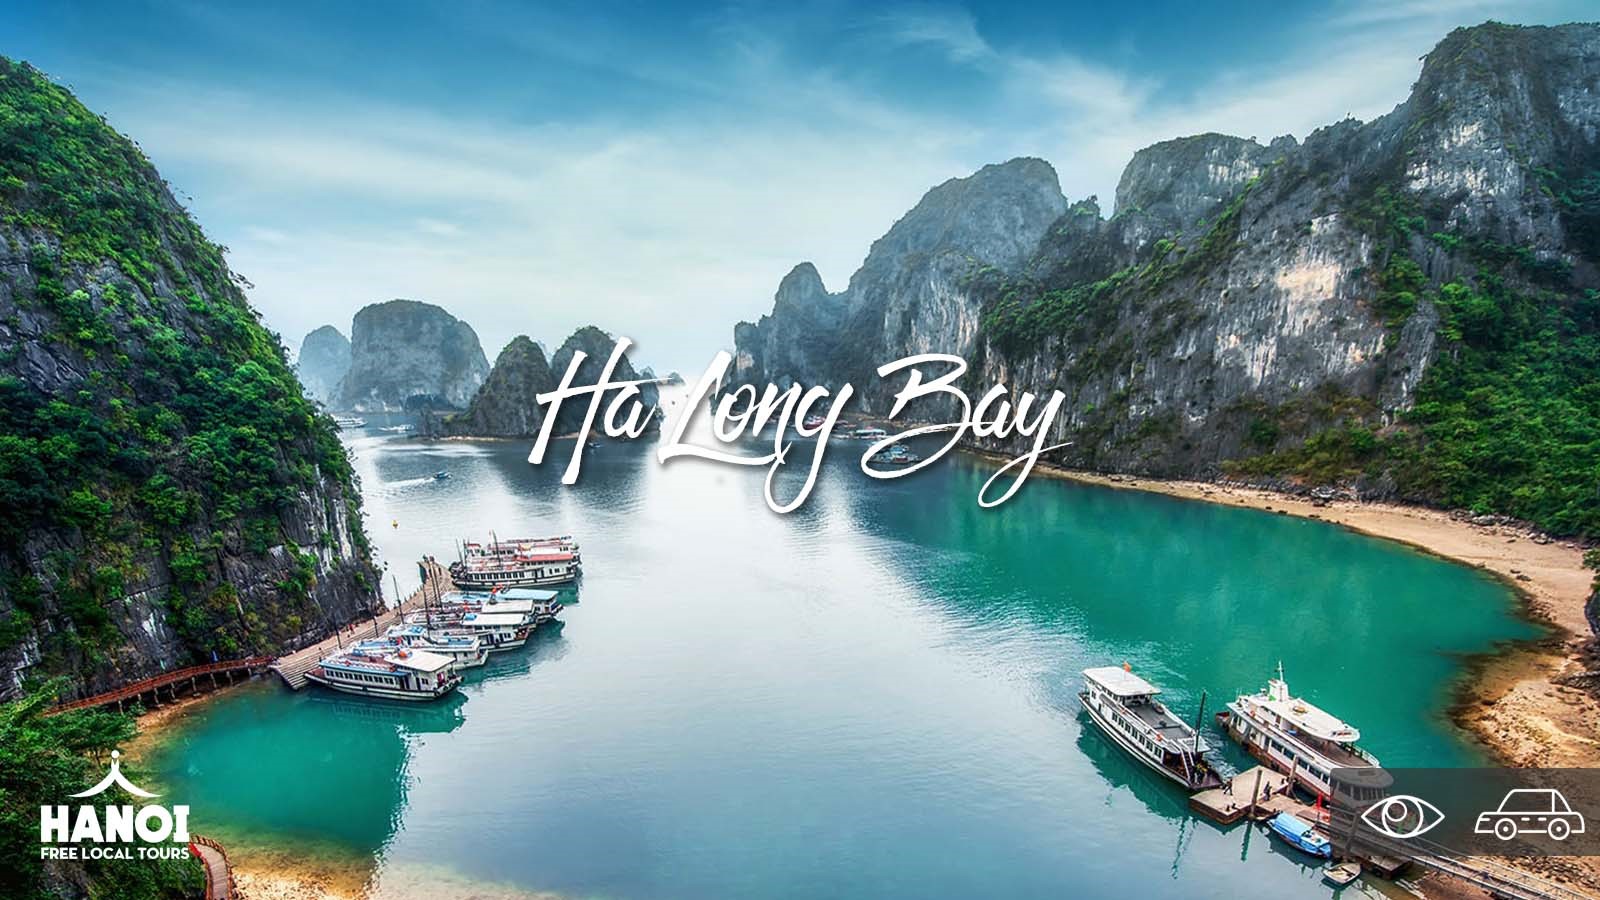  Halong Bay